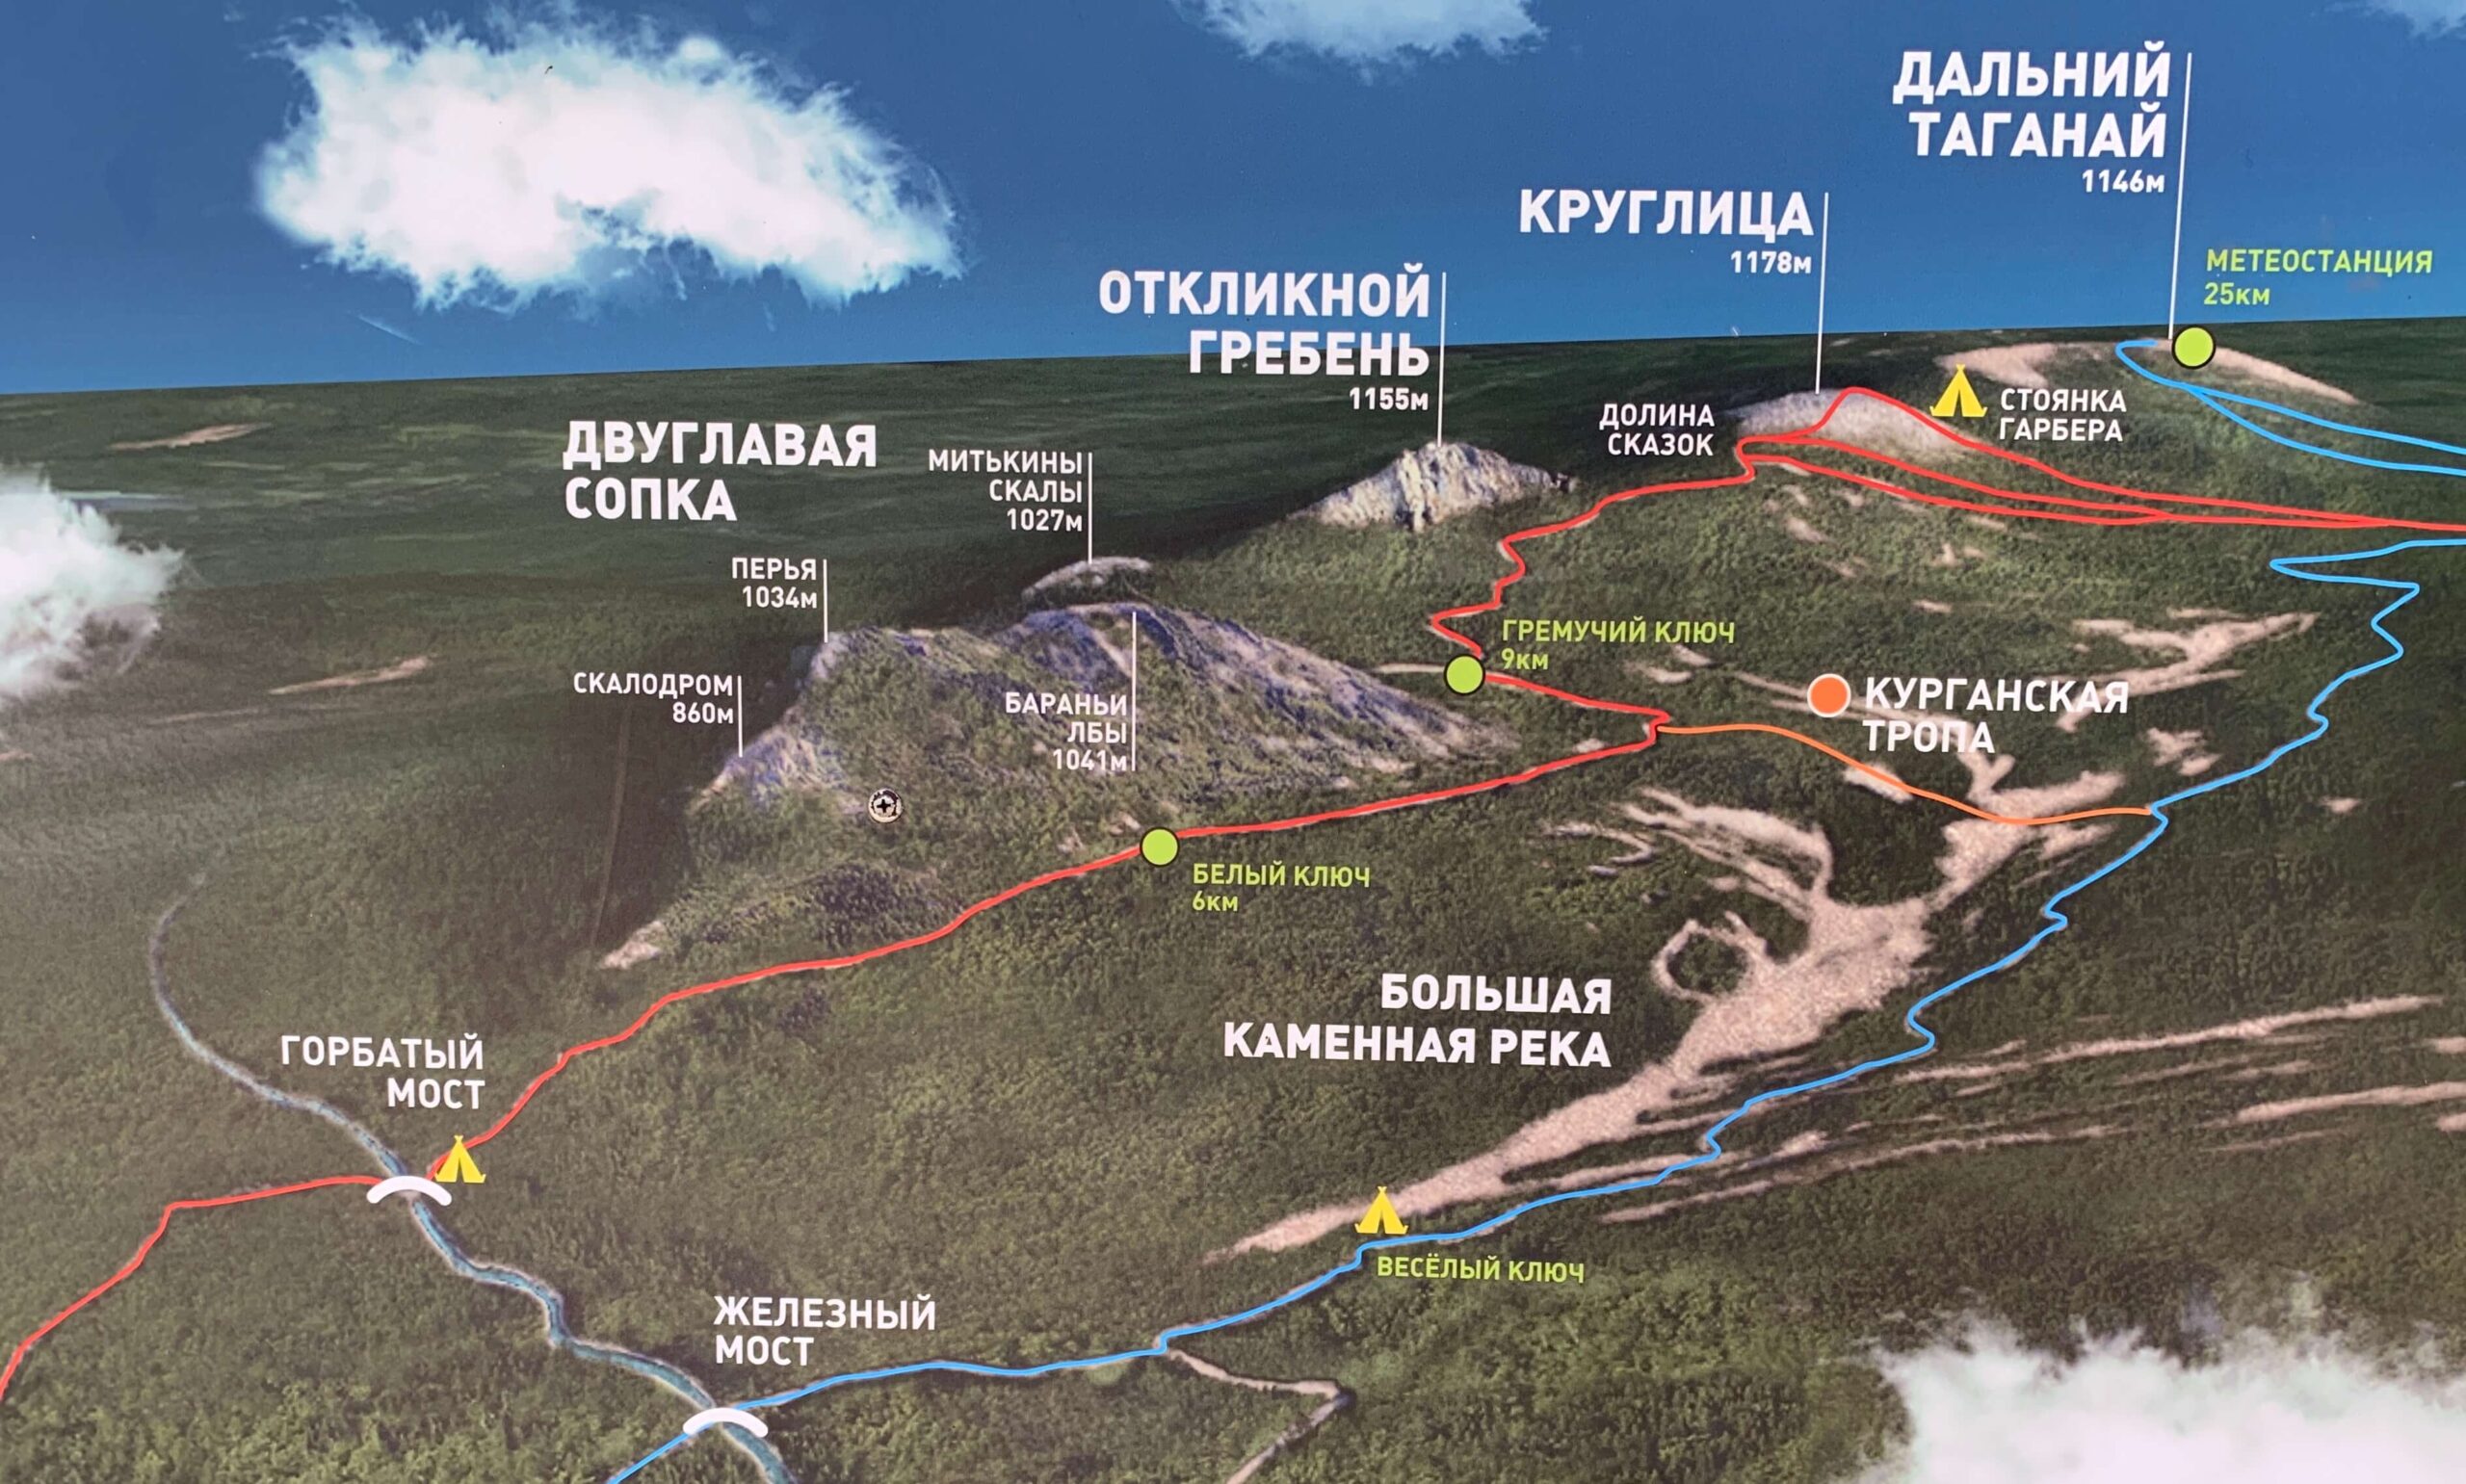 Таганай национальный парк карта маршрутов